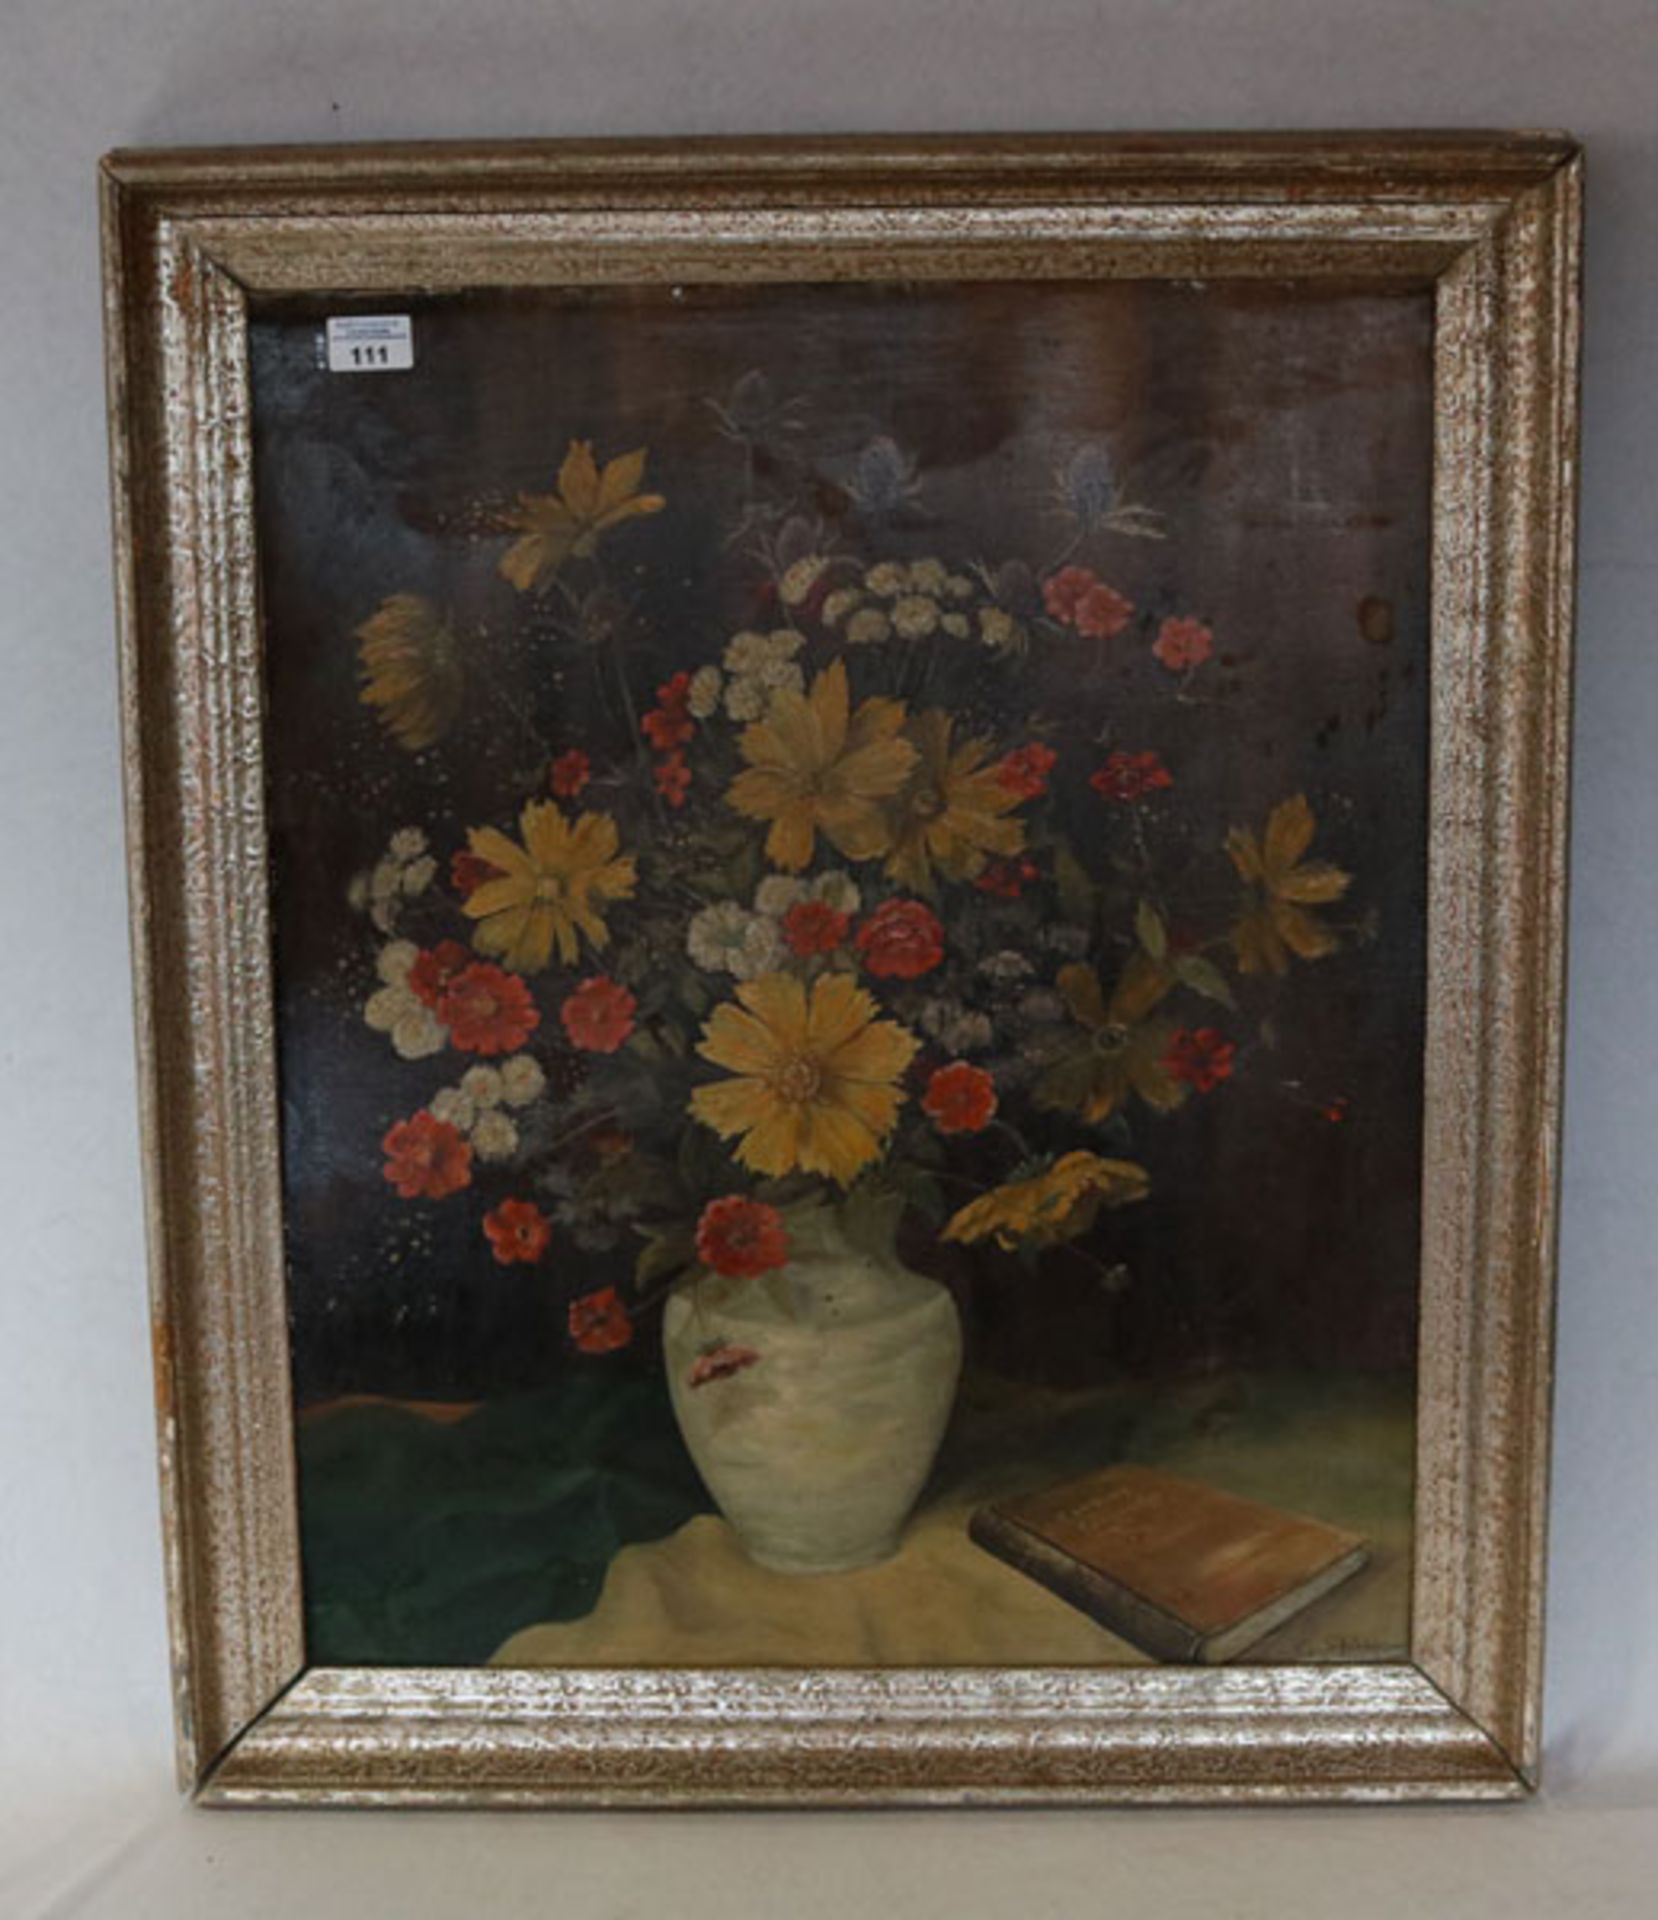 Gemälde ÖL/Malkarton 'Blumen in Vase', signiert Gg. Schönberger, gerahmt, Rahmen bestossen, incl.